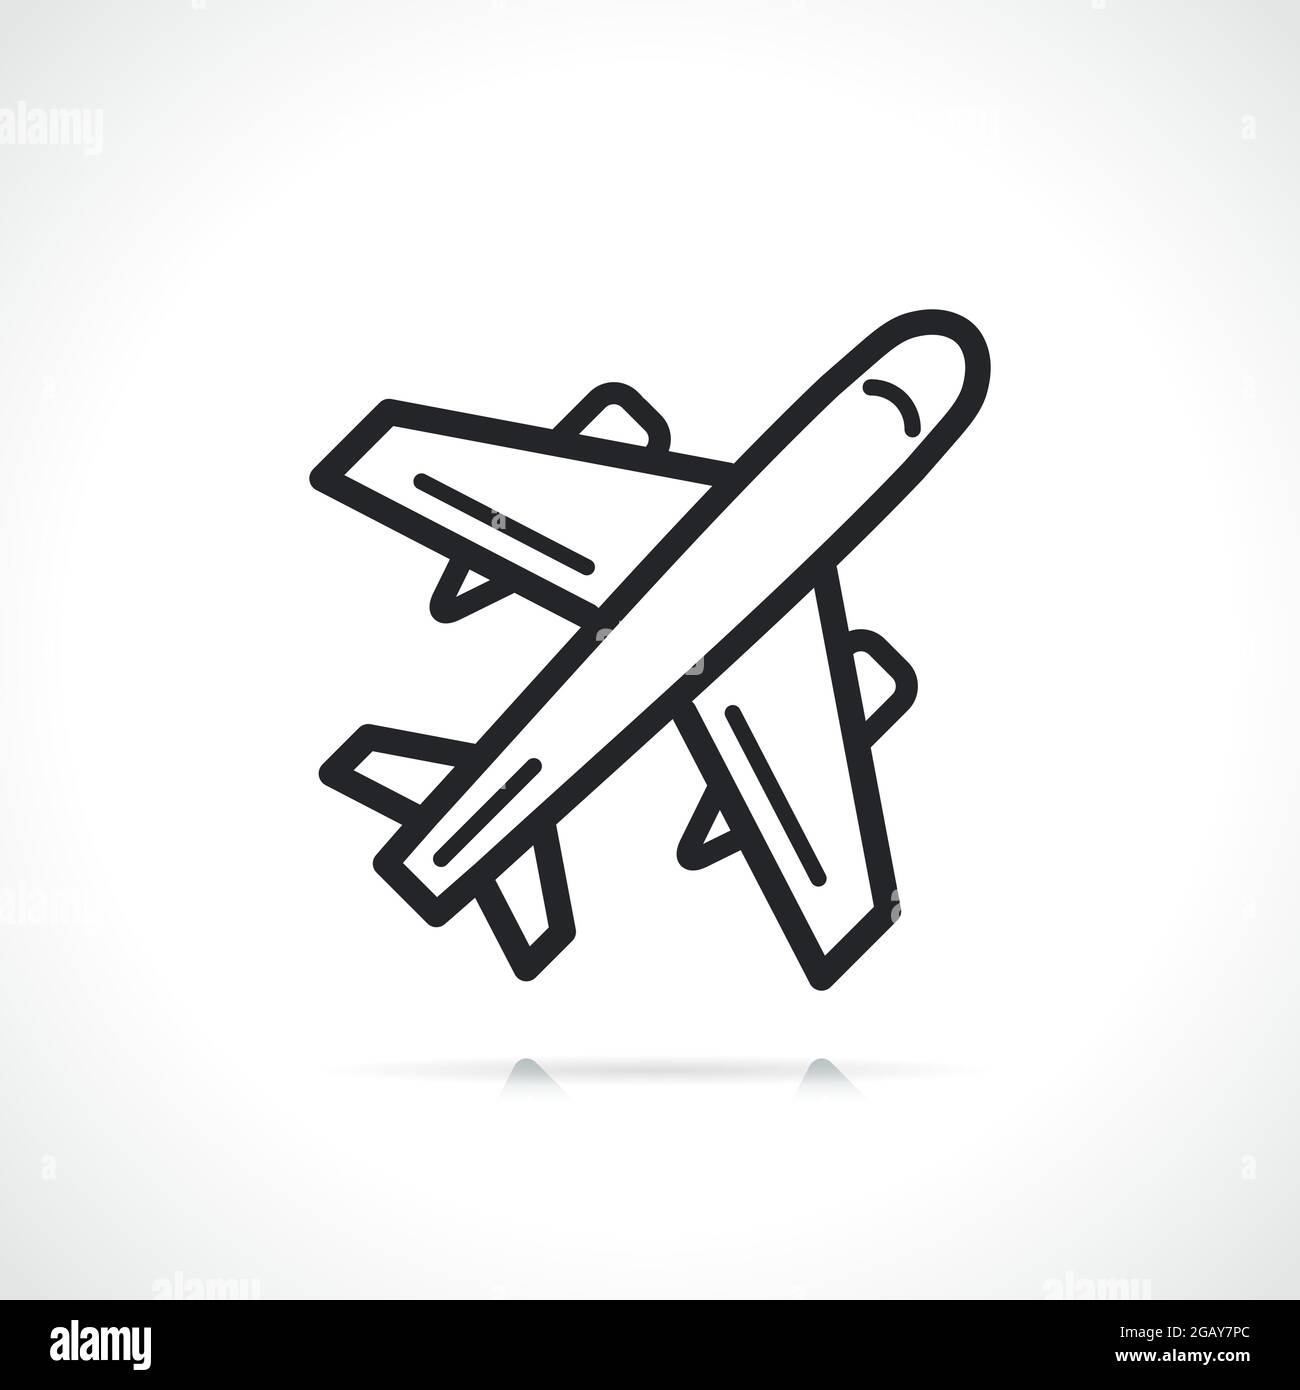 icona della linea sottile del piano o dell'aereo isolata Illustrazione Vettoriale